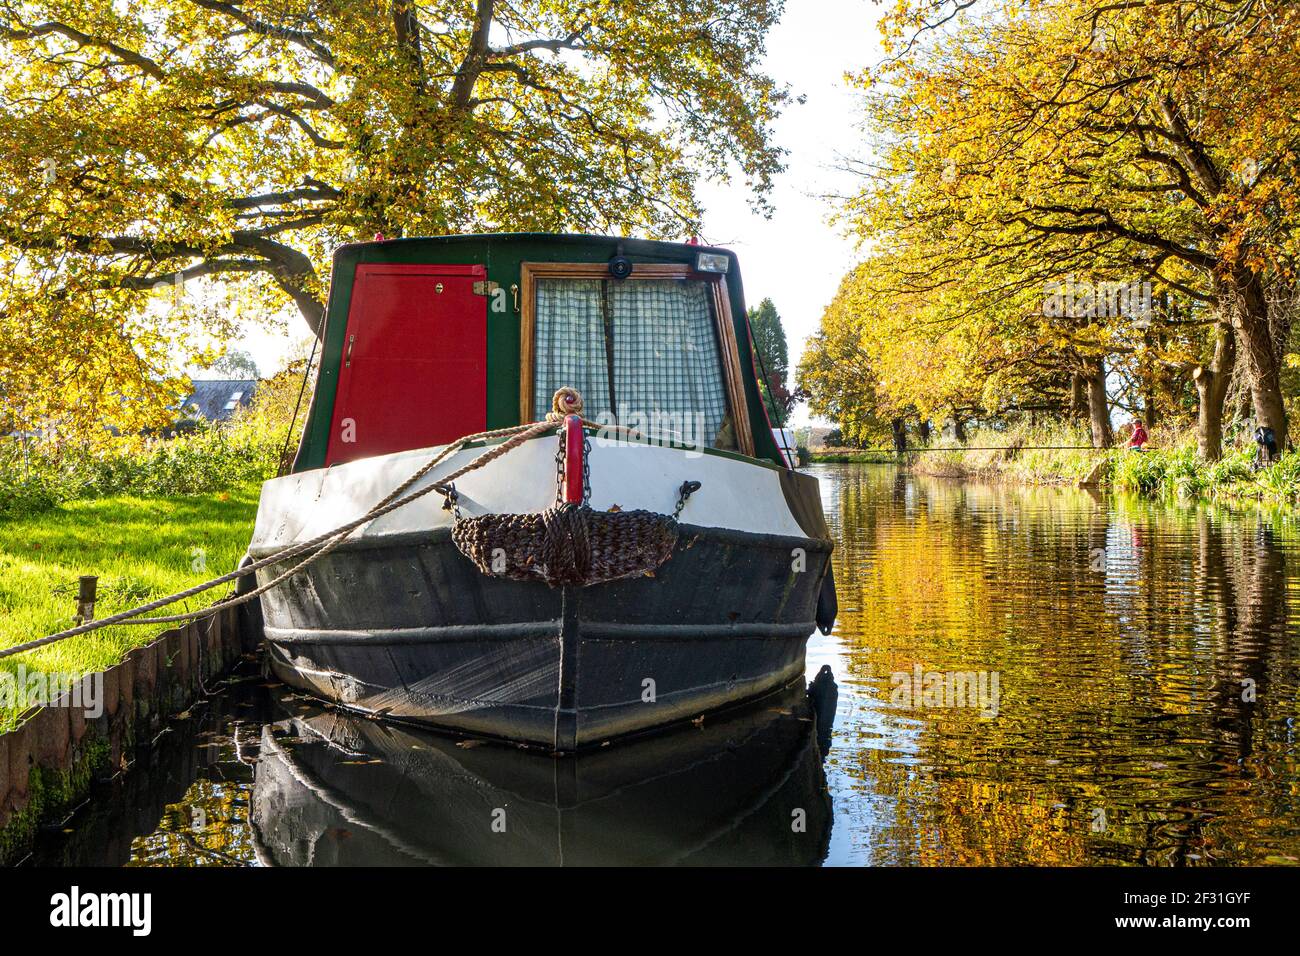 RIVIÈRE WEY AUTOMNE bateau à rames amarré sur la rivière Wey navigation En amont de l'écluse de Papercourt avec pêcheur à la ligne derrière en automne Surrey Angleterre Royaume-Uni Banque D'Images